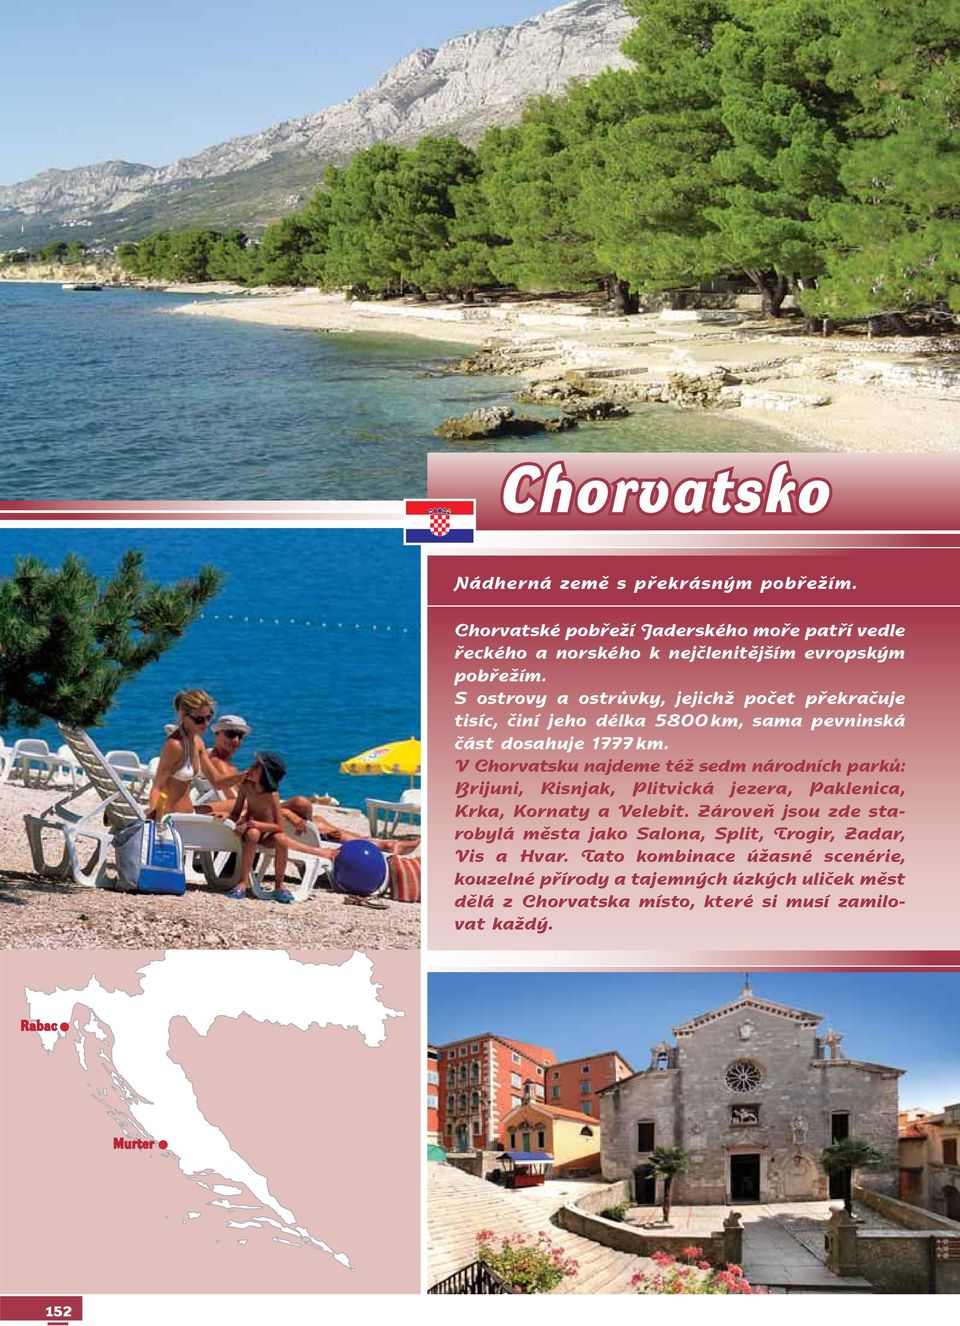 V Chorvatsku najdeme též sedm národních parků: Brijuni, Risnjak, Plitvická jezera, Paklenica, Krka, Kornaty a Ve le bit.